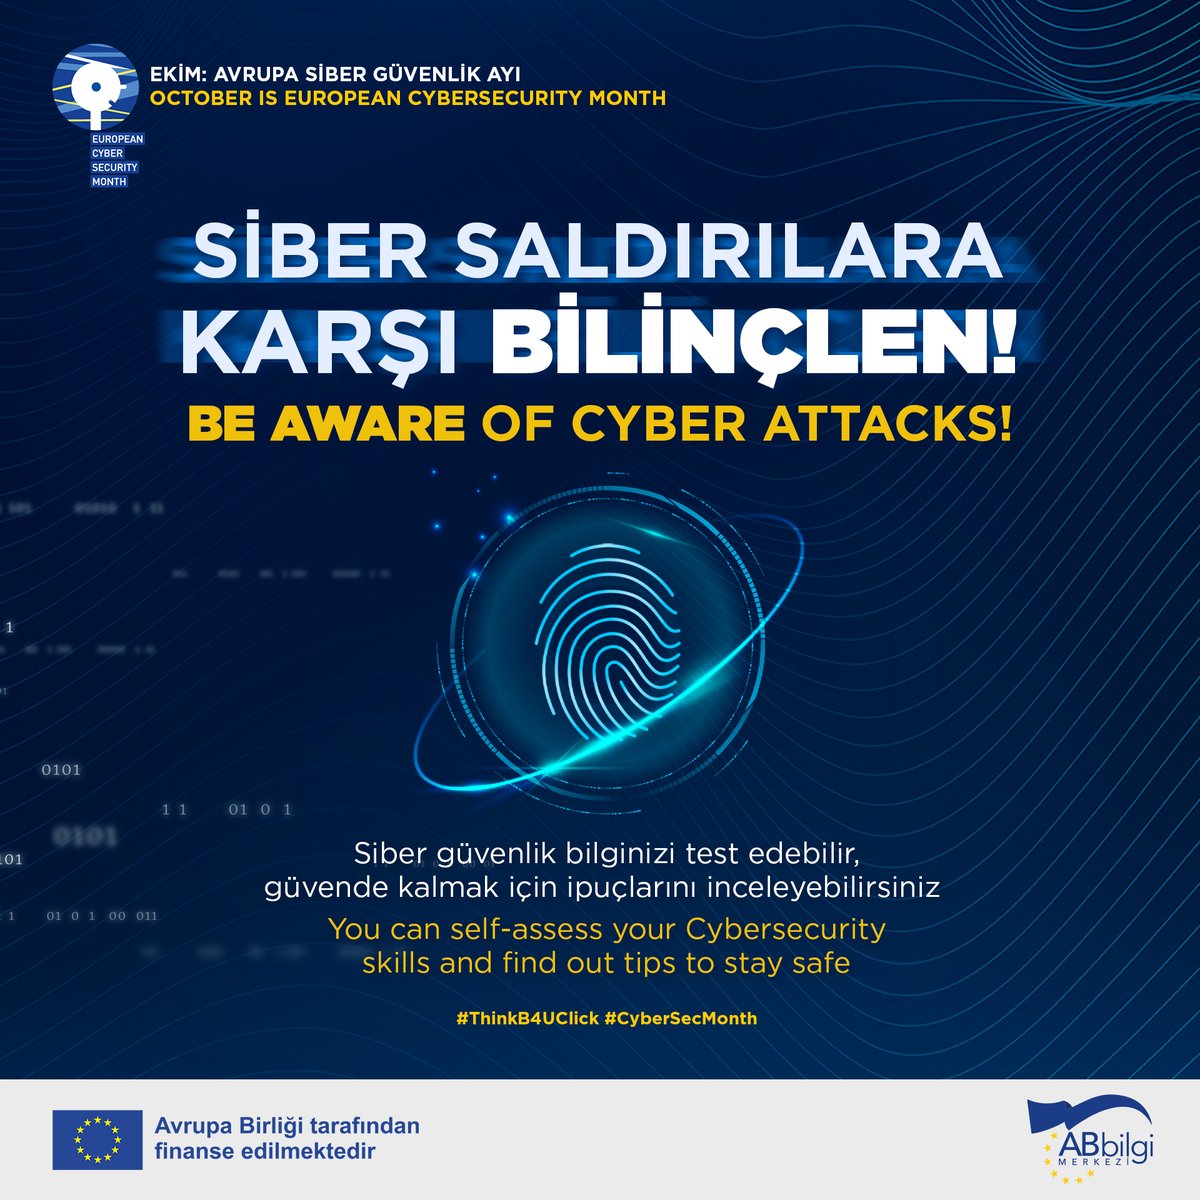 🇪🇺 Avrupa Birliği Siber Güvenlik Ajansı (ENISA), #sibergüvenlik bilincini artırmak için bilgi ve ipuçları sunuyor.
Detaylı bilgi için: cybersecuritymonth.eu/get-cyber-skil…

#ThinkB4UClick #CyberSecMonth